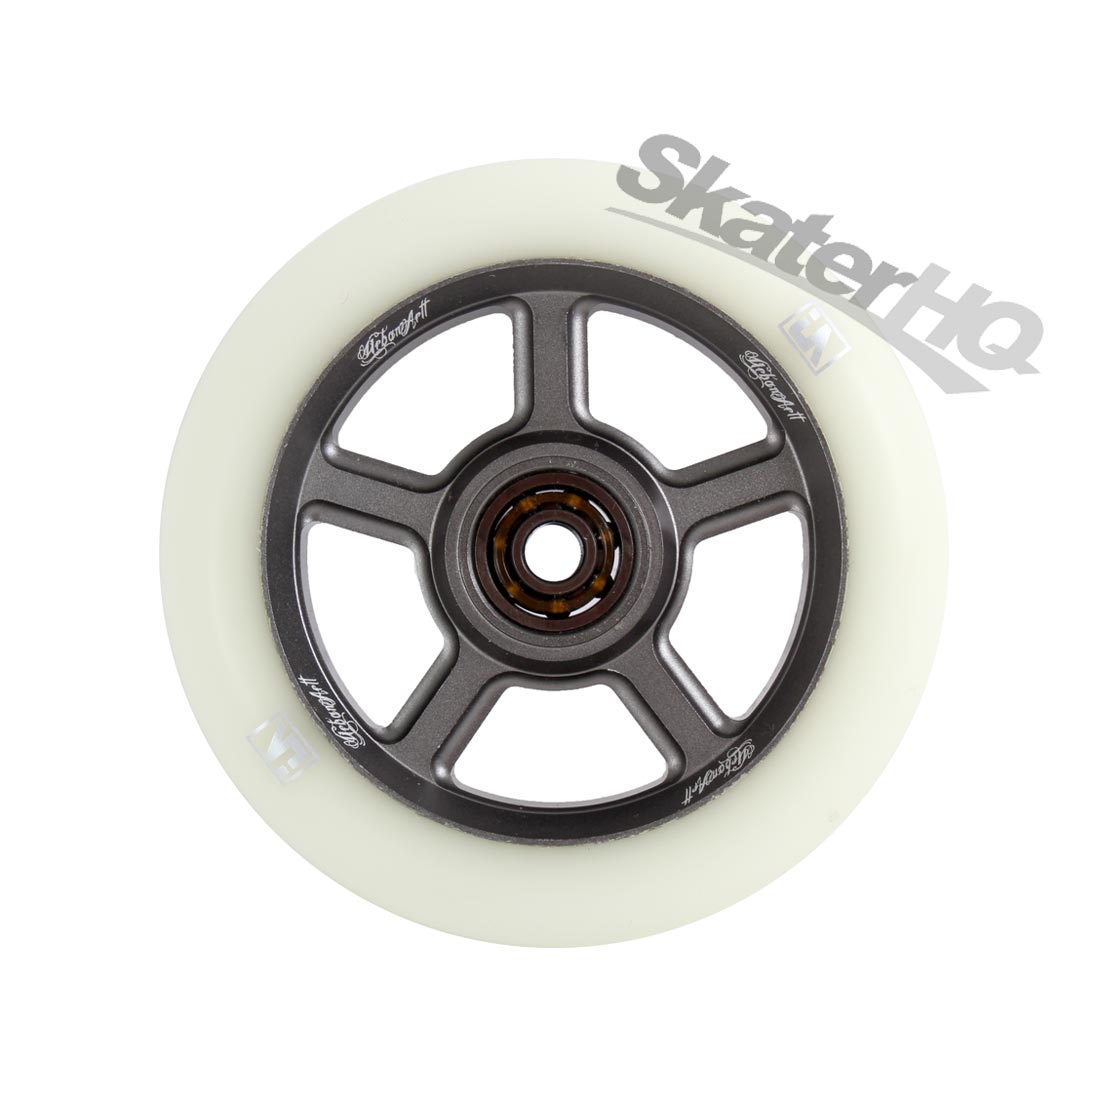 UrbanArtt S5 110mm White/Grey w/ Bearings Scooter Wheels